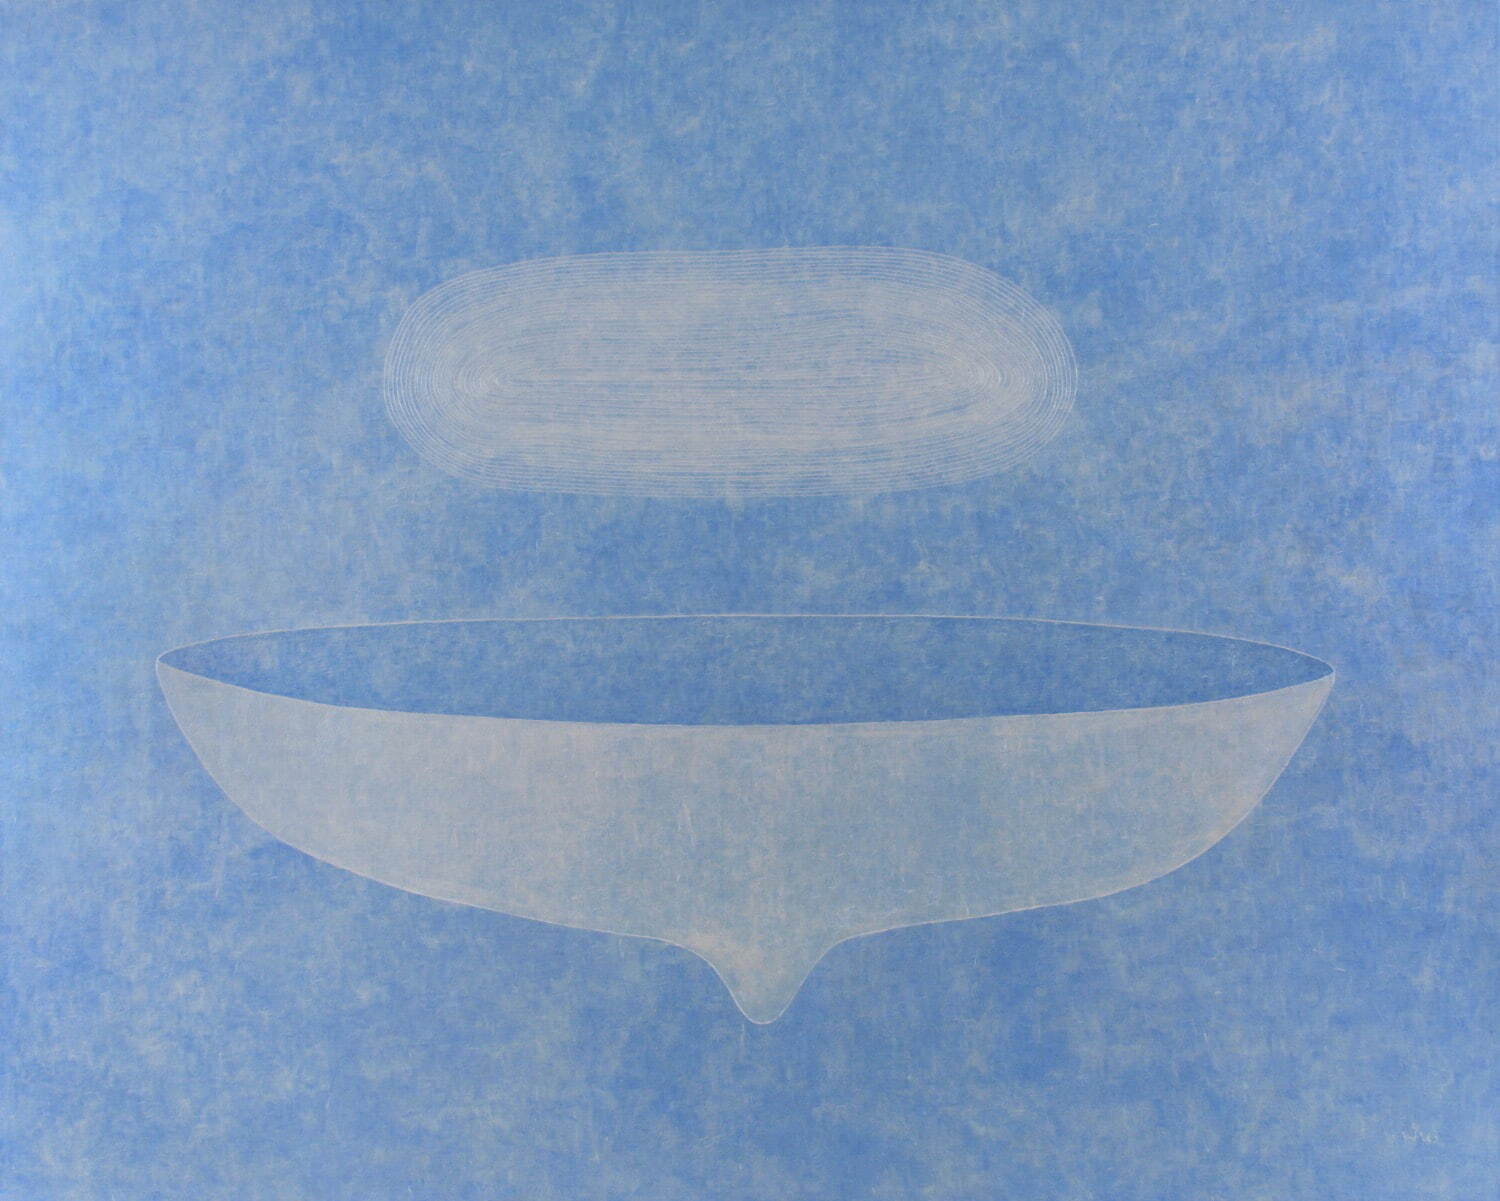 ピナリー・サンピタク 《ブリリアント・ブルー》2008年 アクリル、カンヴァス 198×250cm
©Pinaree Sanpitak
courtesy of Tyler Rollins Fine Art